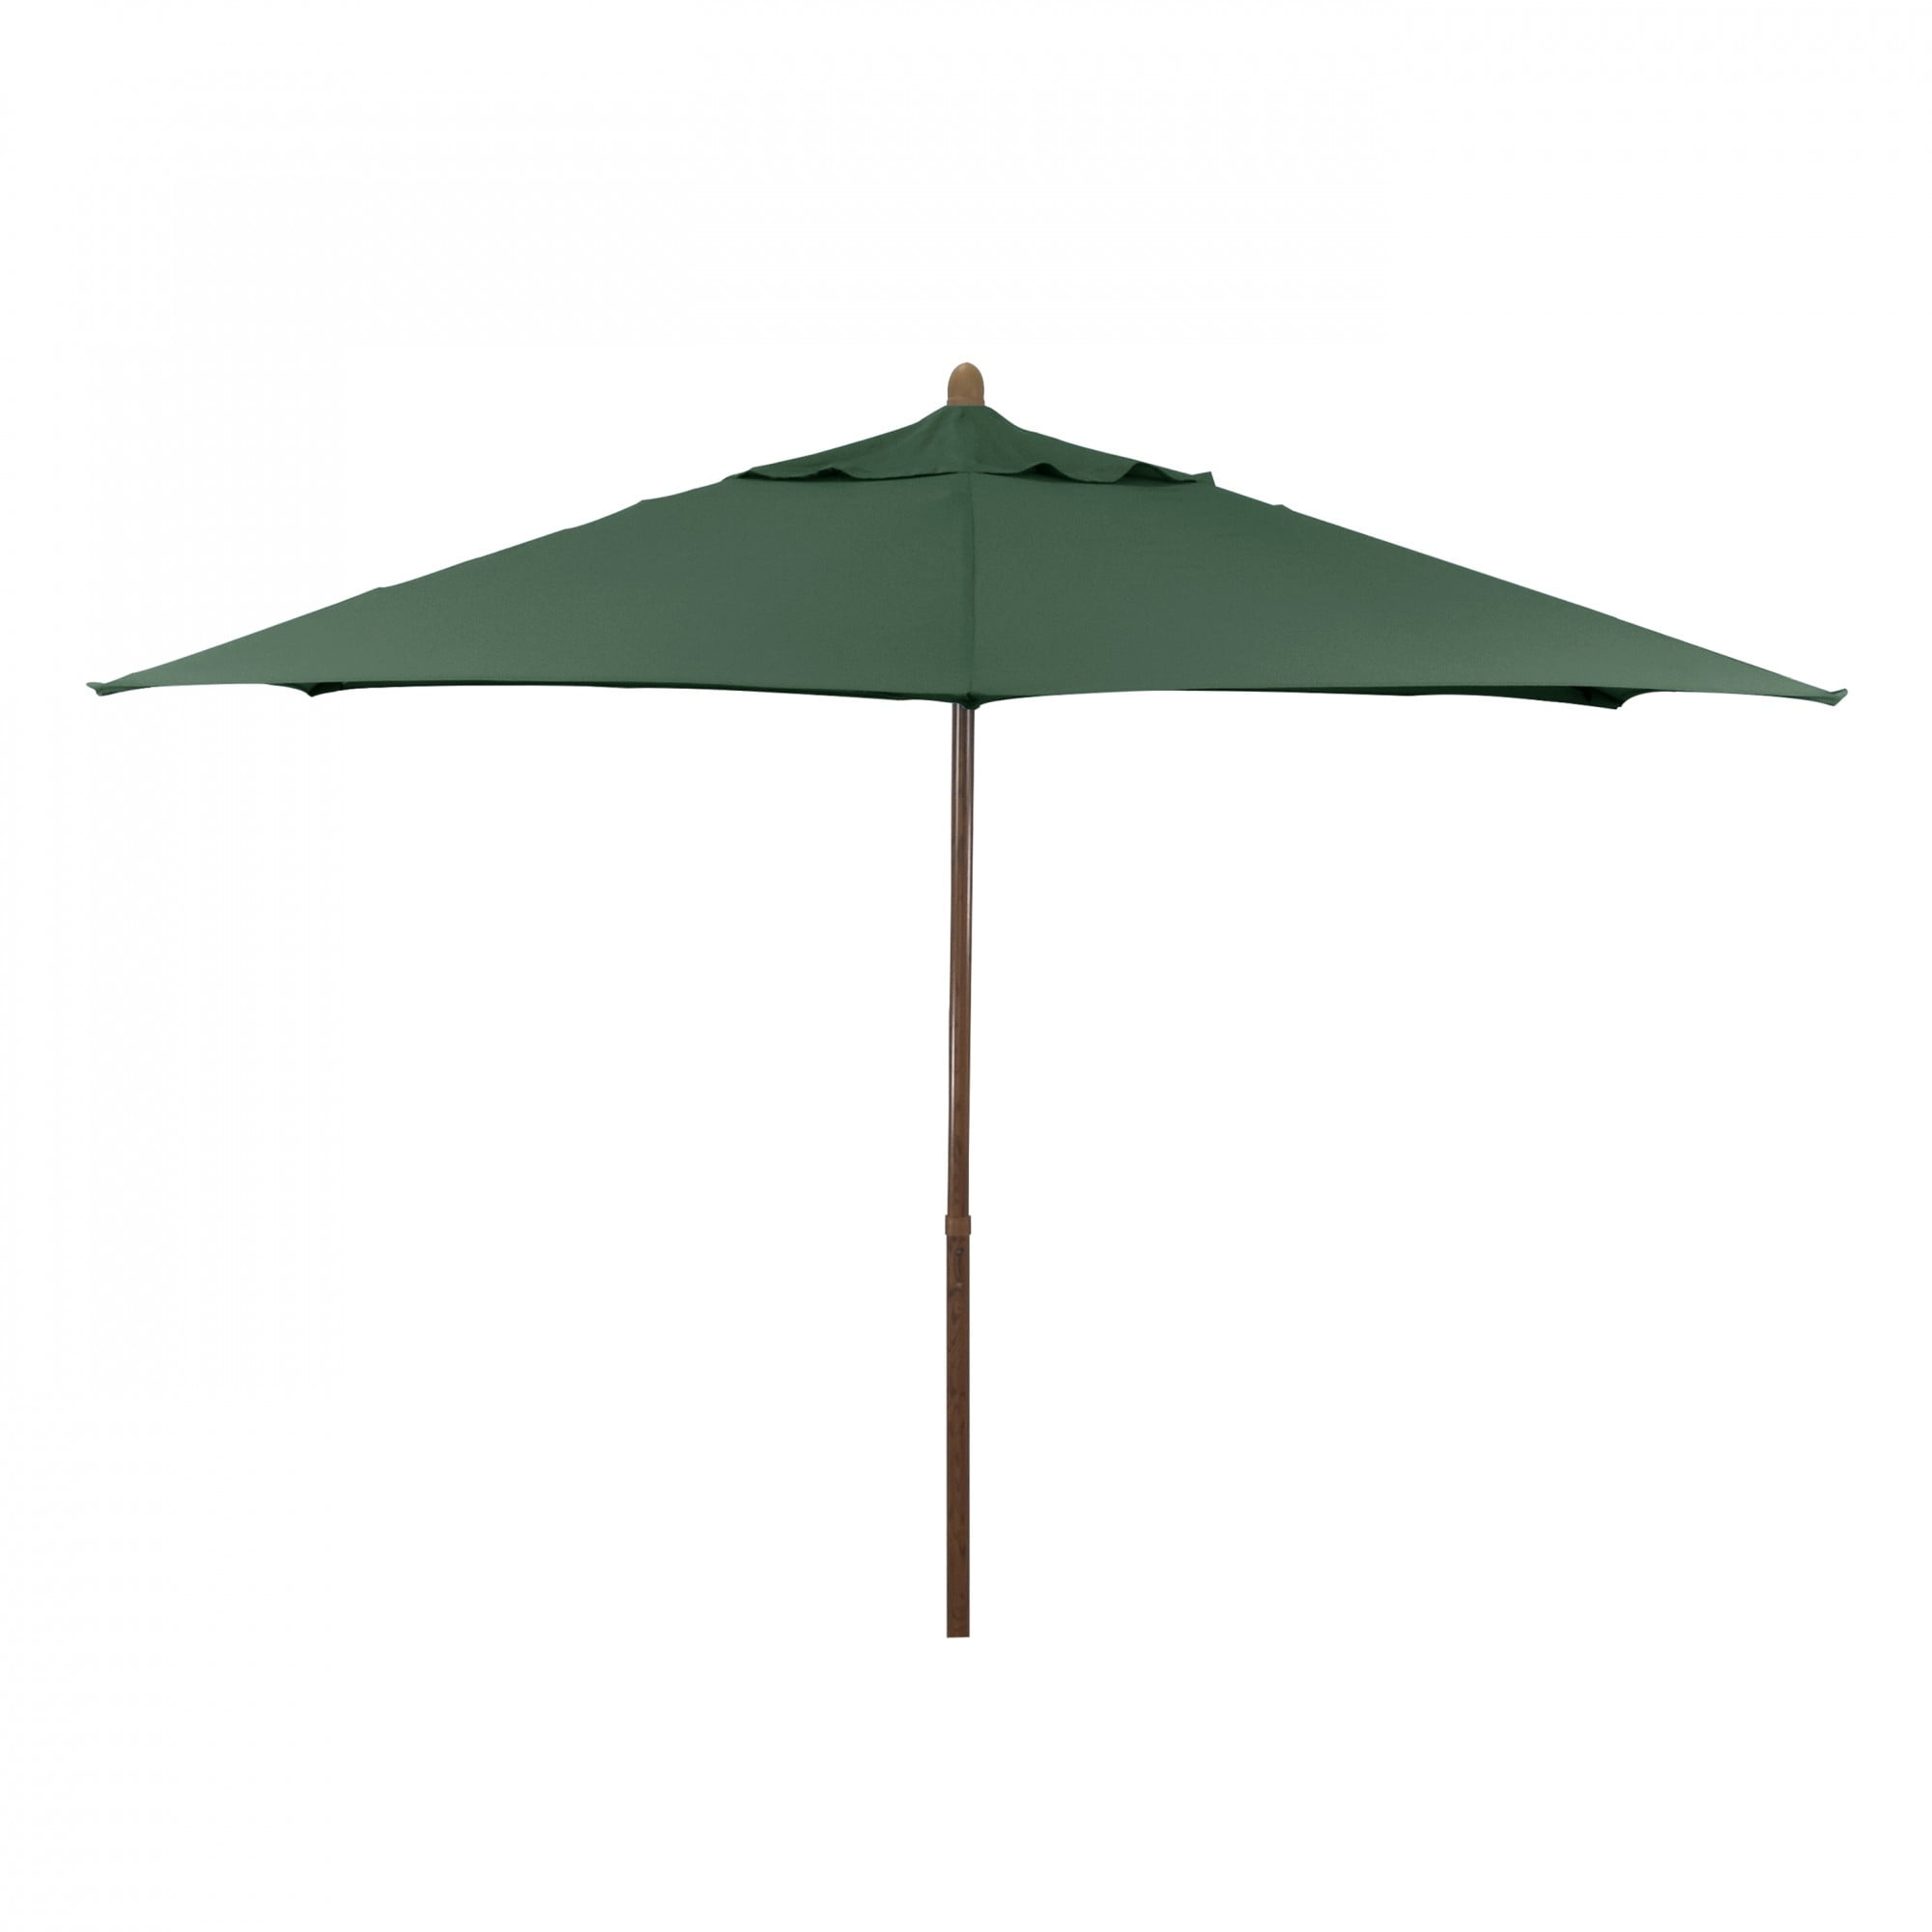 VEGOND Patio Umbrella 9FT Table Umbrella Outdoor Market Umbrella with Tilt Adjustment and Crank Lift System Green 